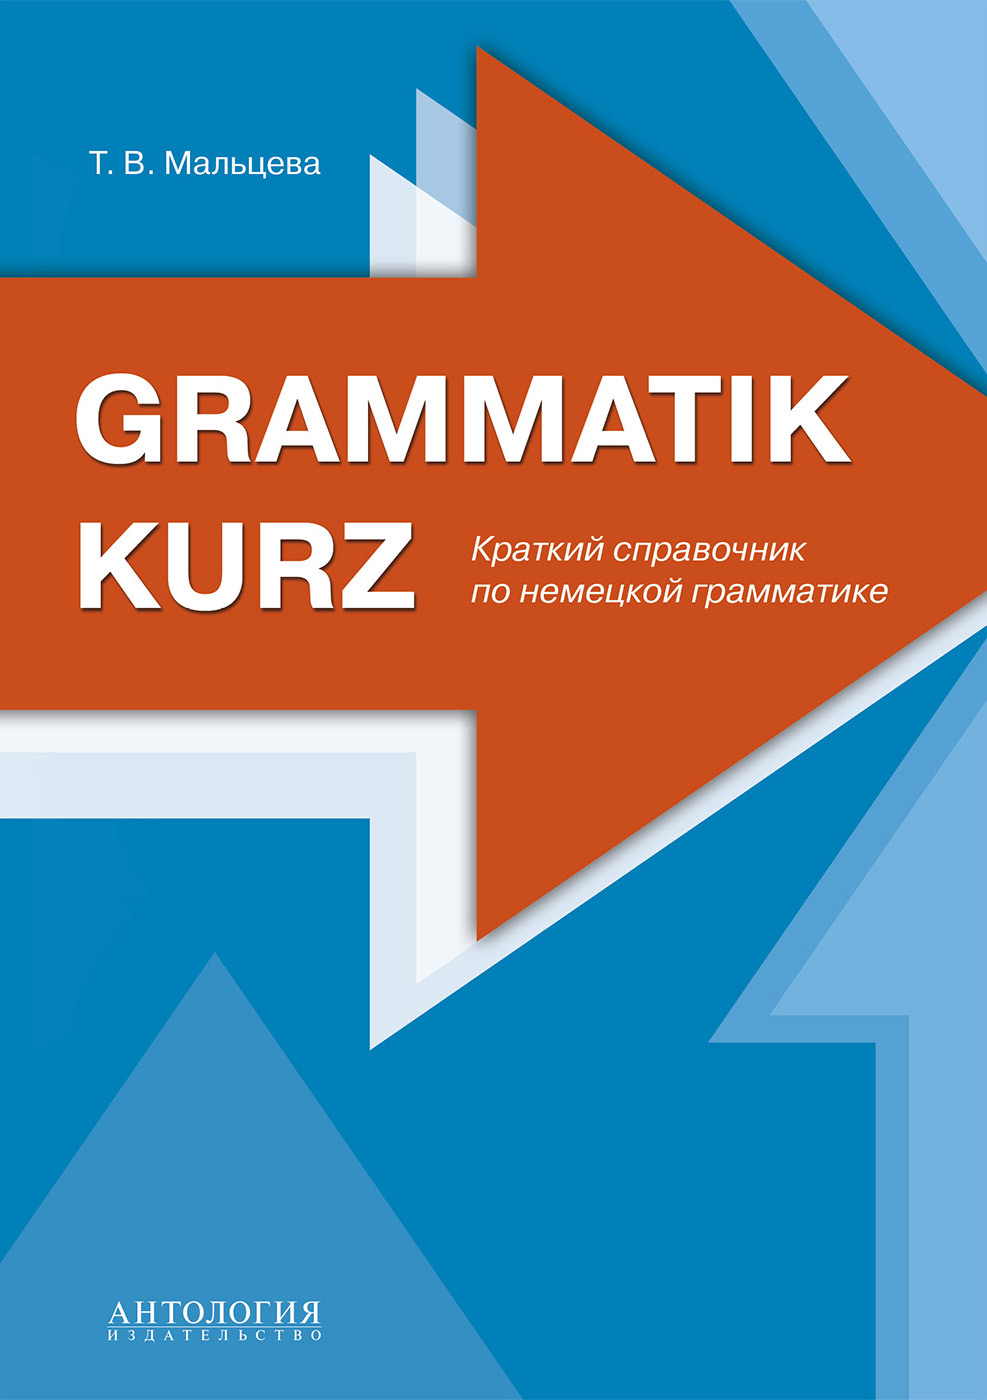 Grammatik kurz :Краткий справочник по немецкой грамматике